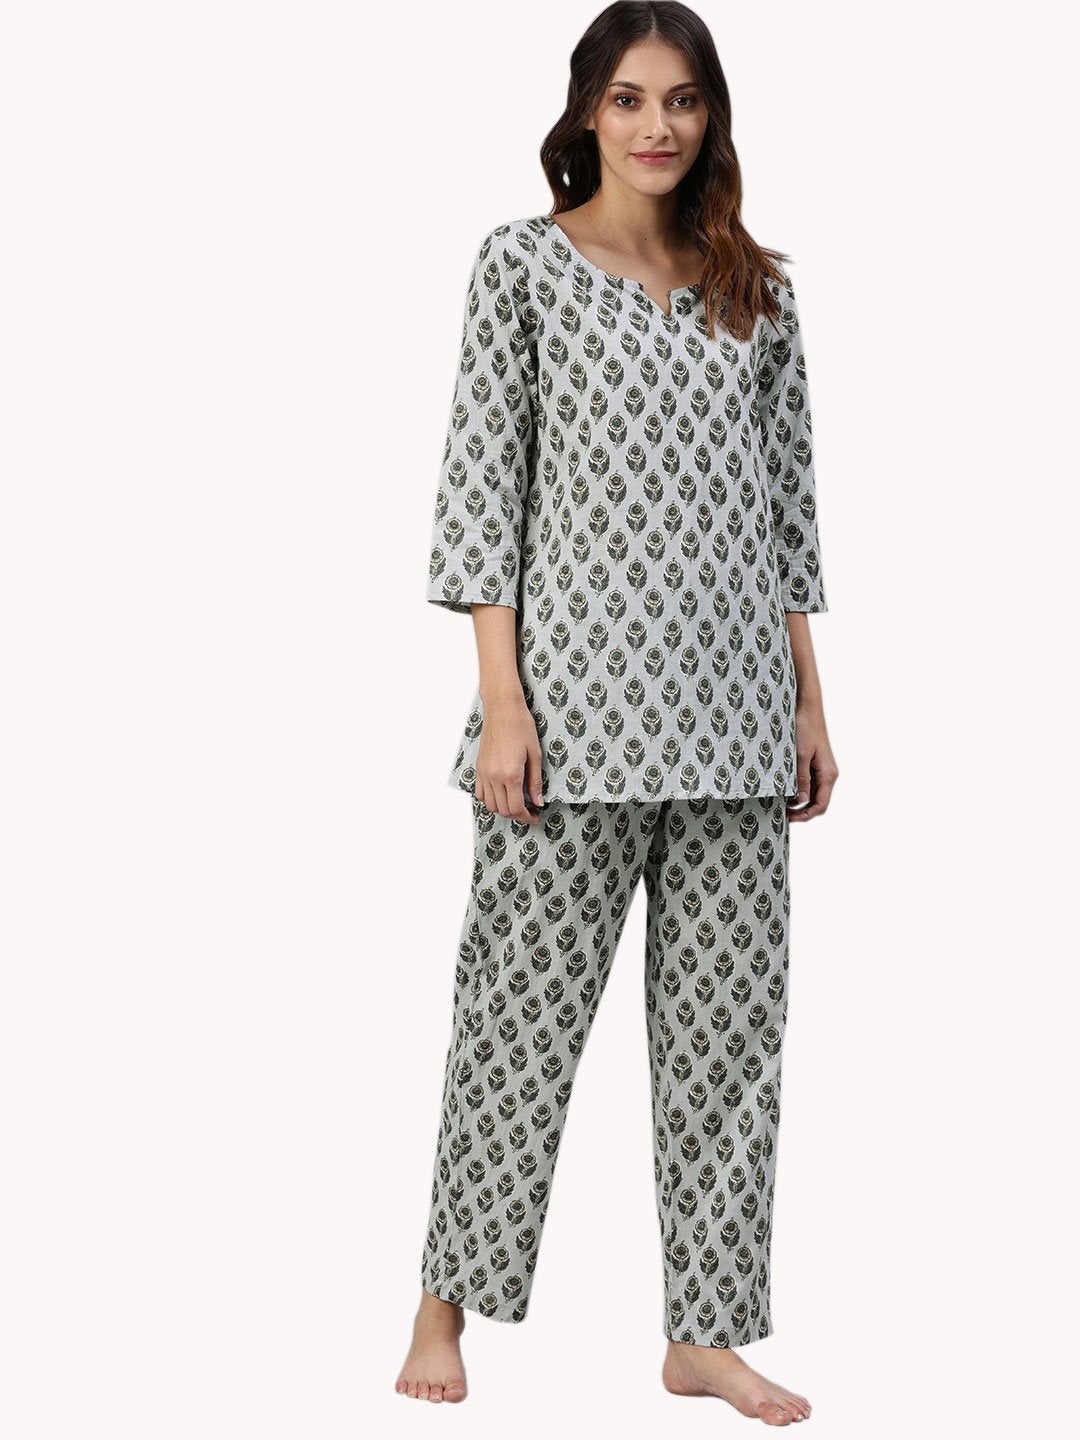 Women's Grey Color Cotton Loungewear/Nightwear - Divena